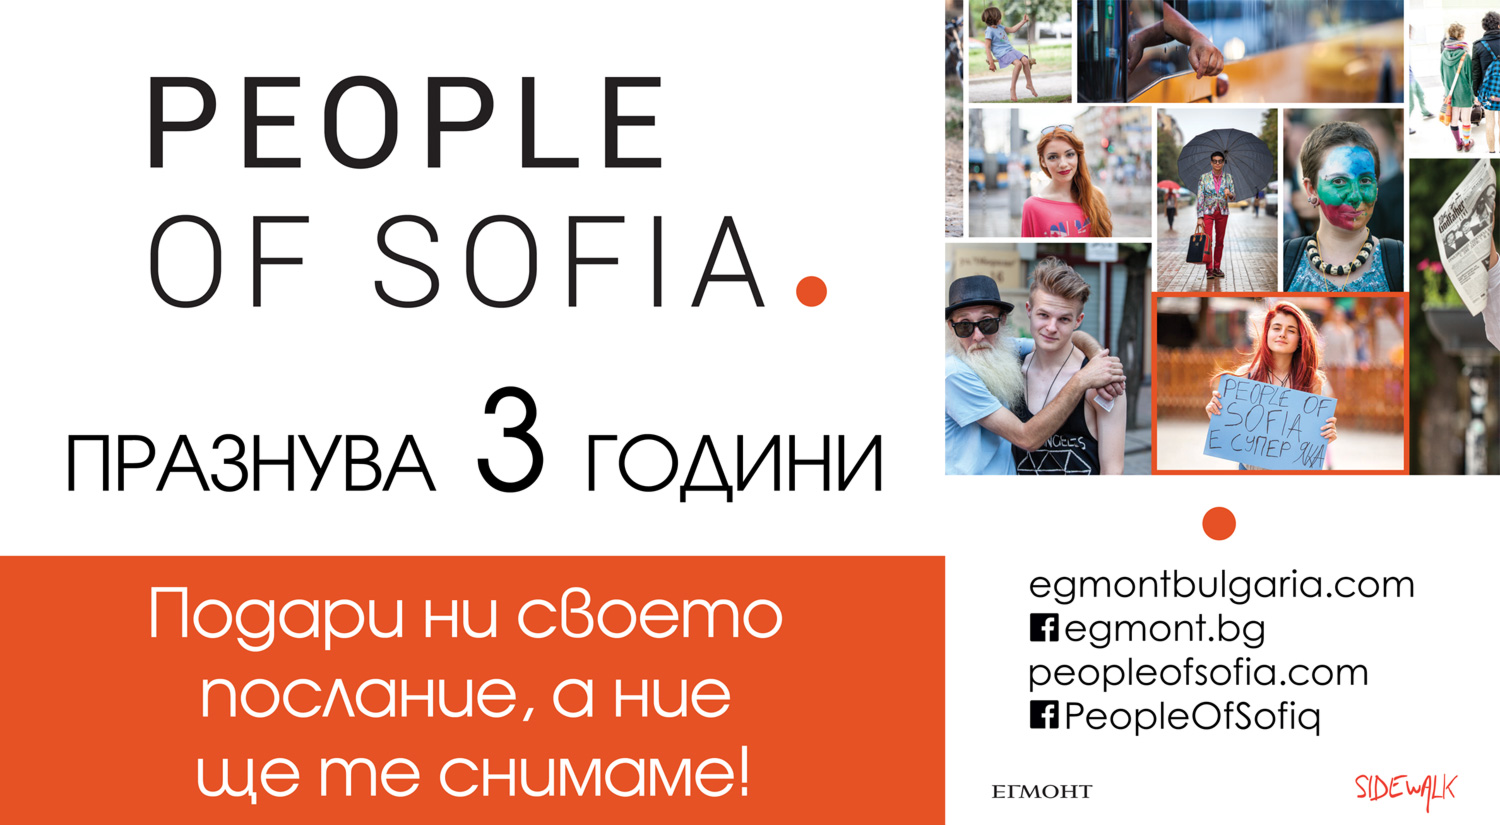 People of Sofia / Хората на София празнува 3 години със събитие в София